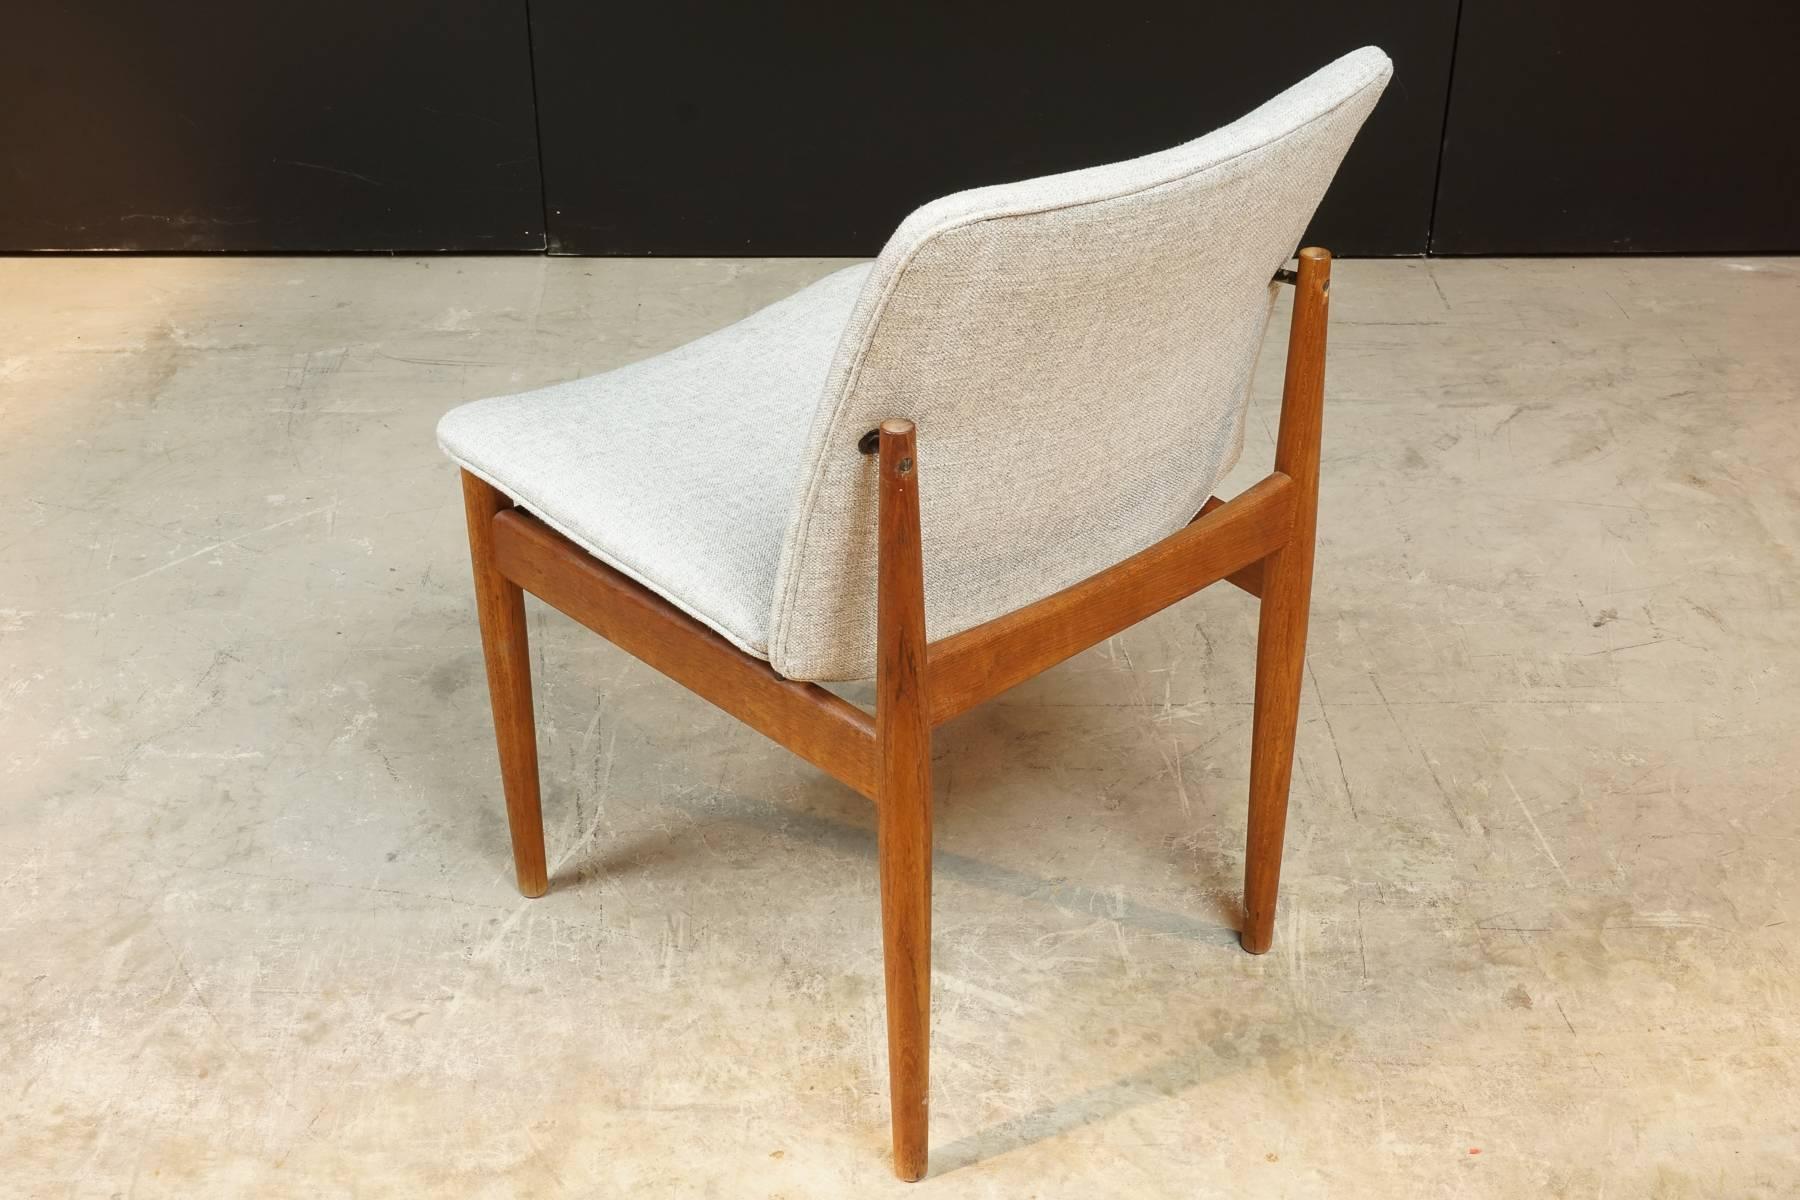 Danish teak wood and upholstery chair, model 191 by Finn Juhl for France & Daverkosen, manufactured in Denmark in the 1960s. Newly upholstered.